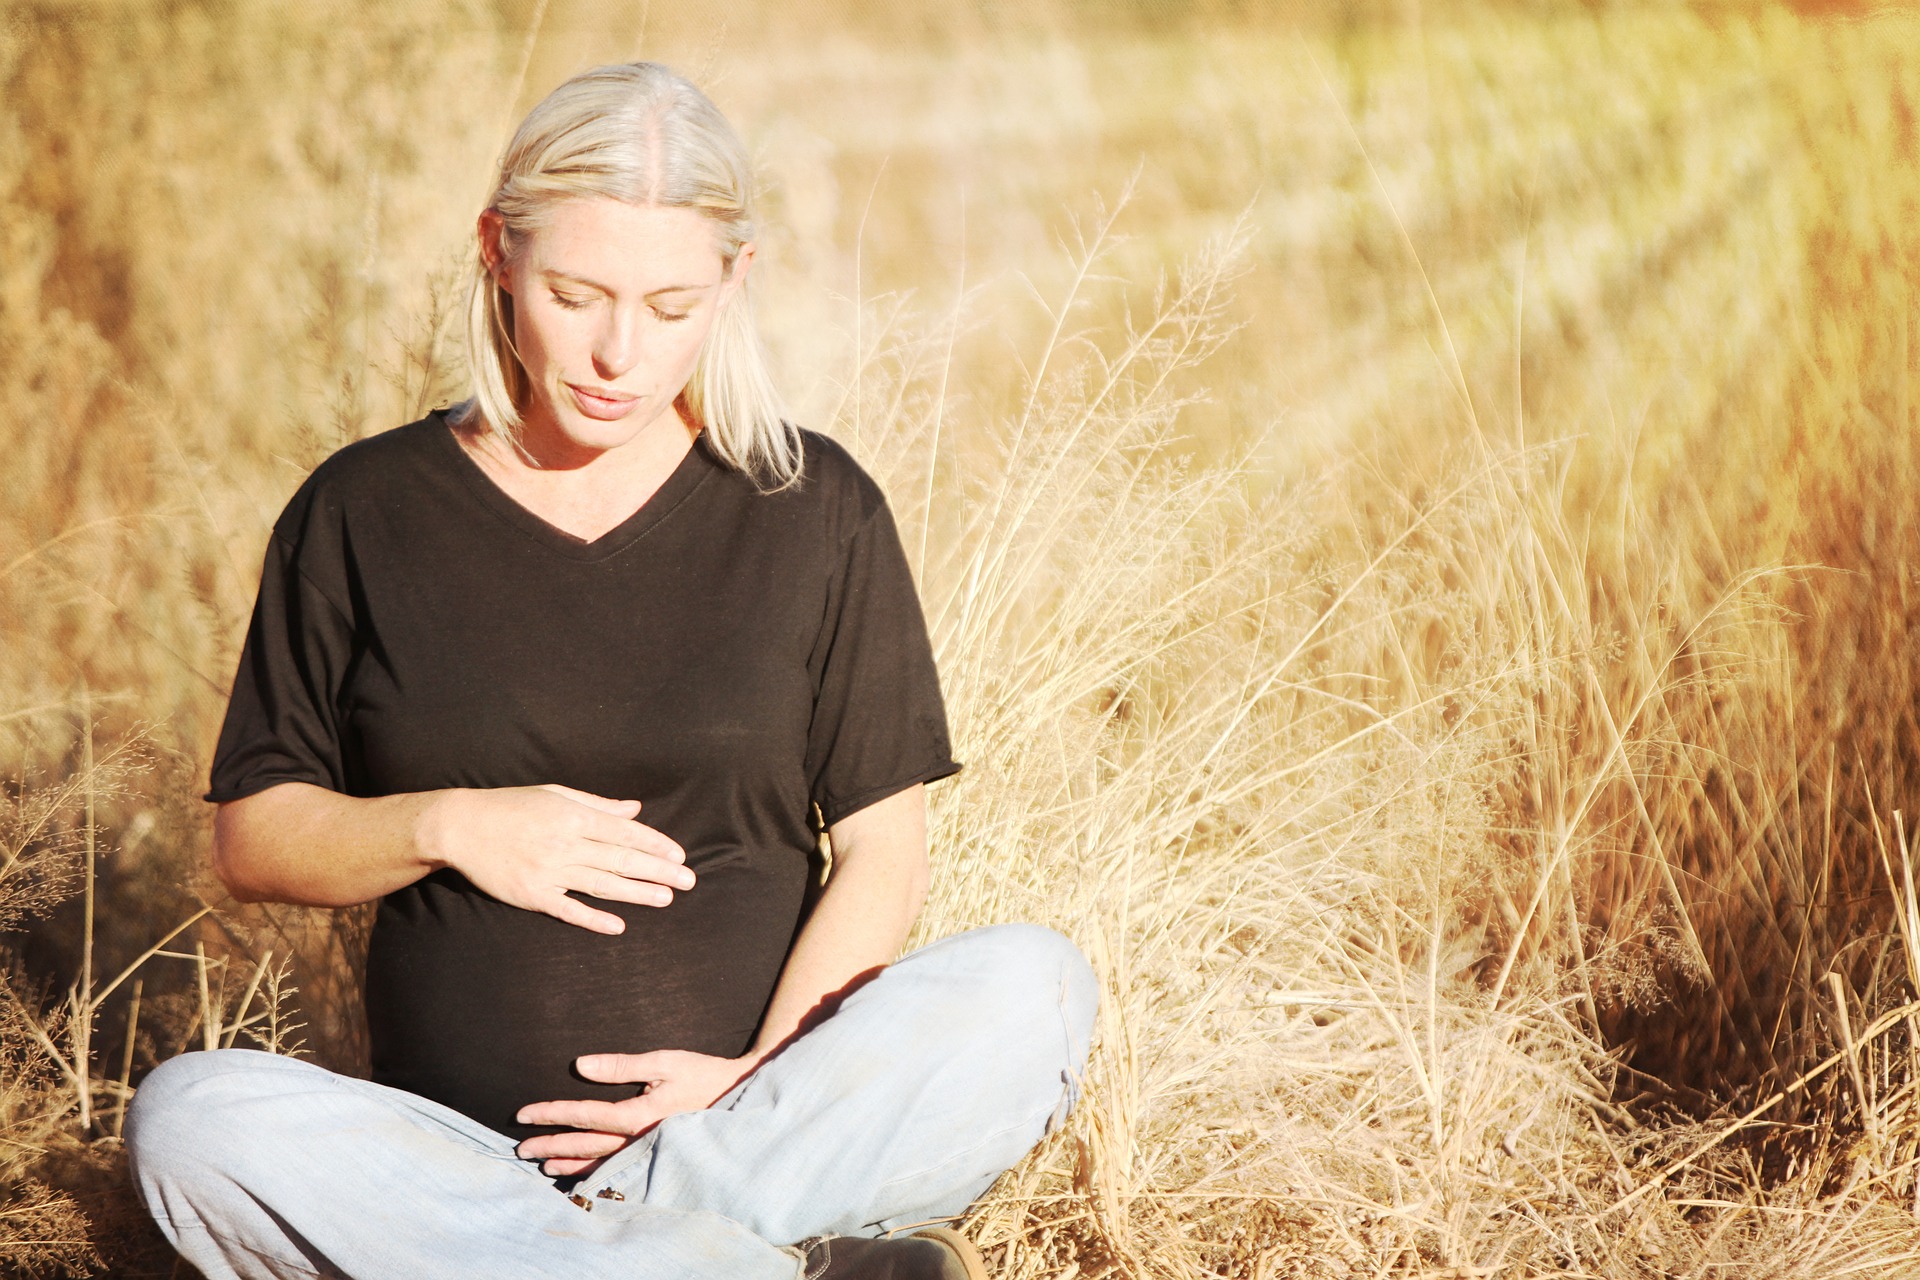 Pruebas prenatales y control del embarazo